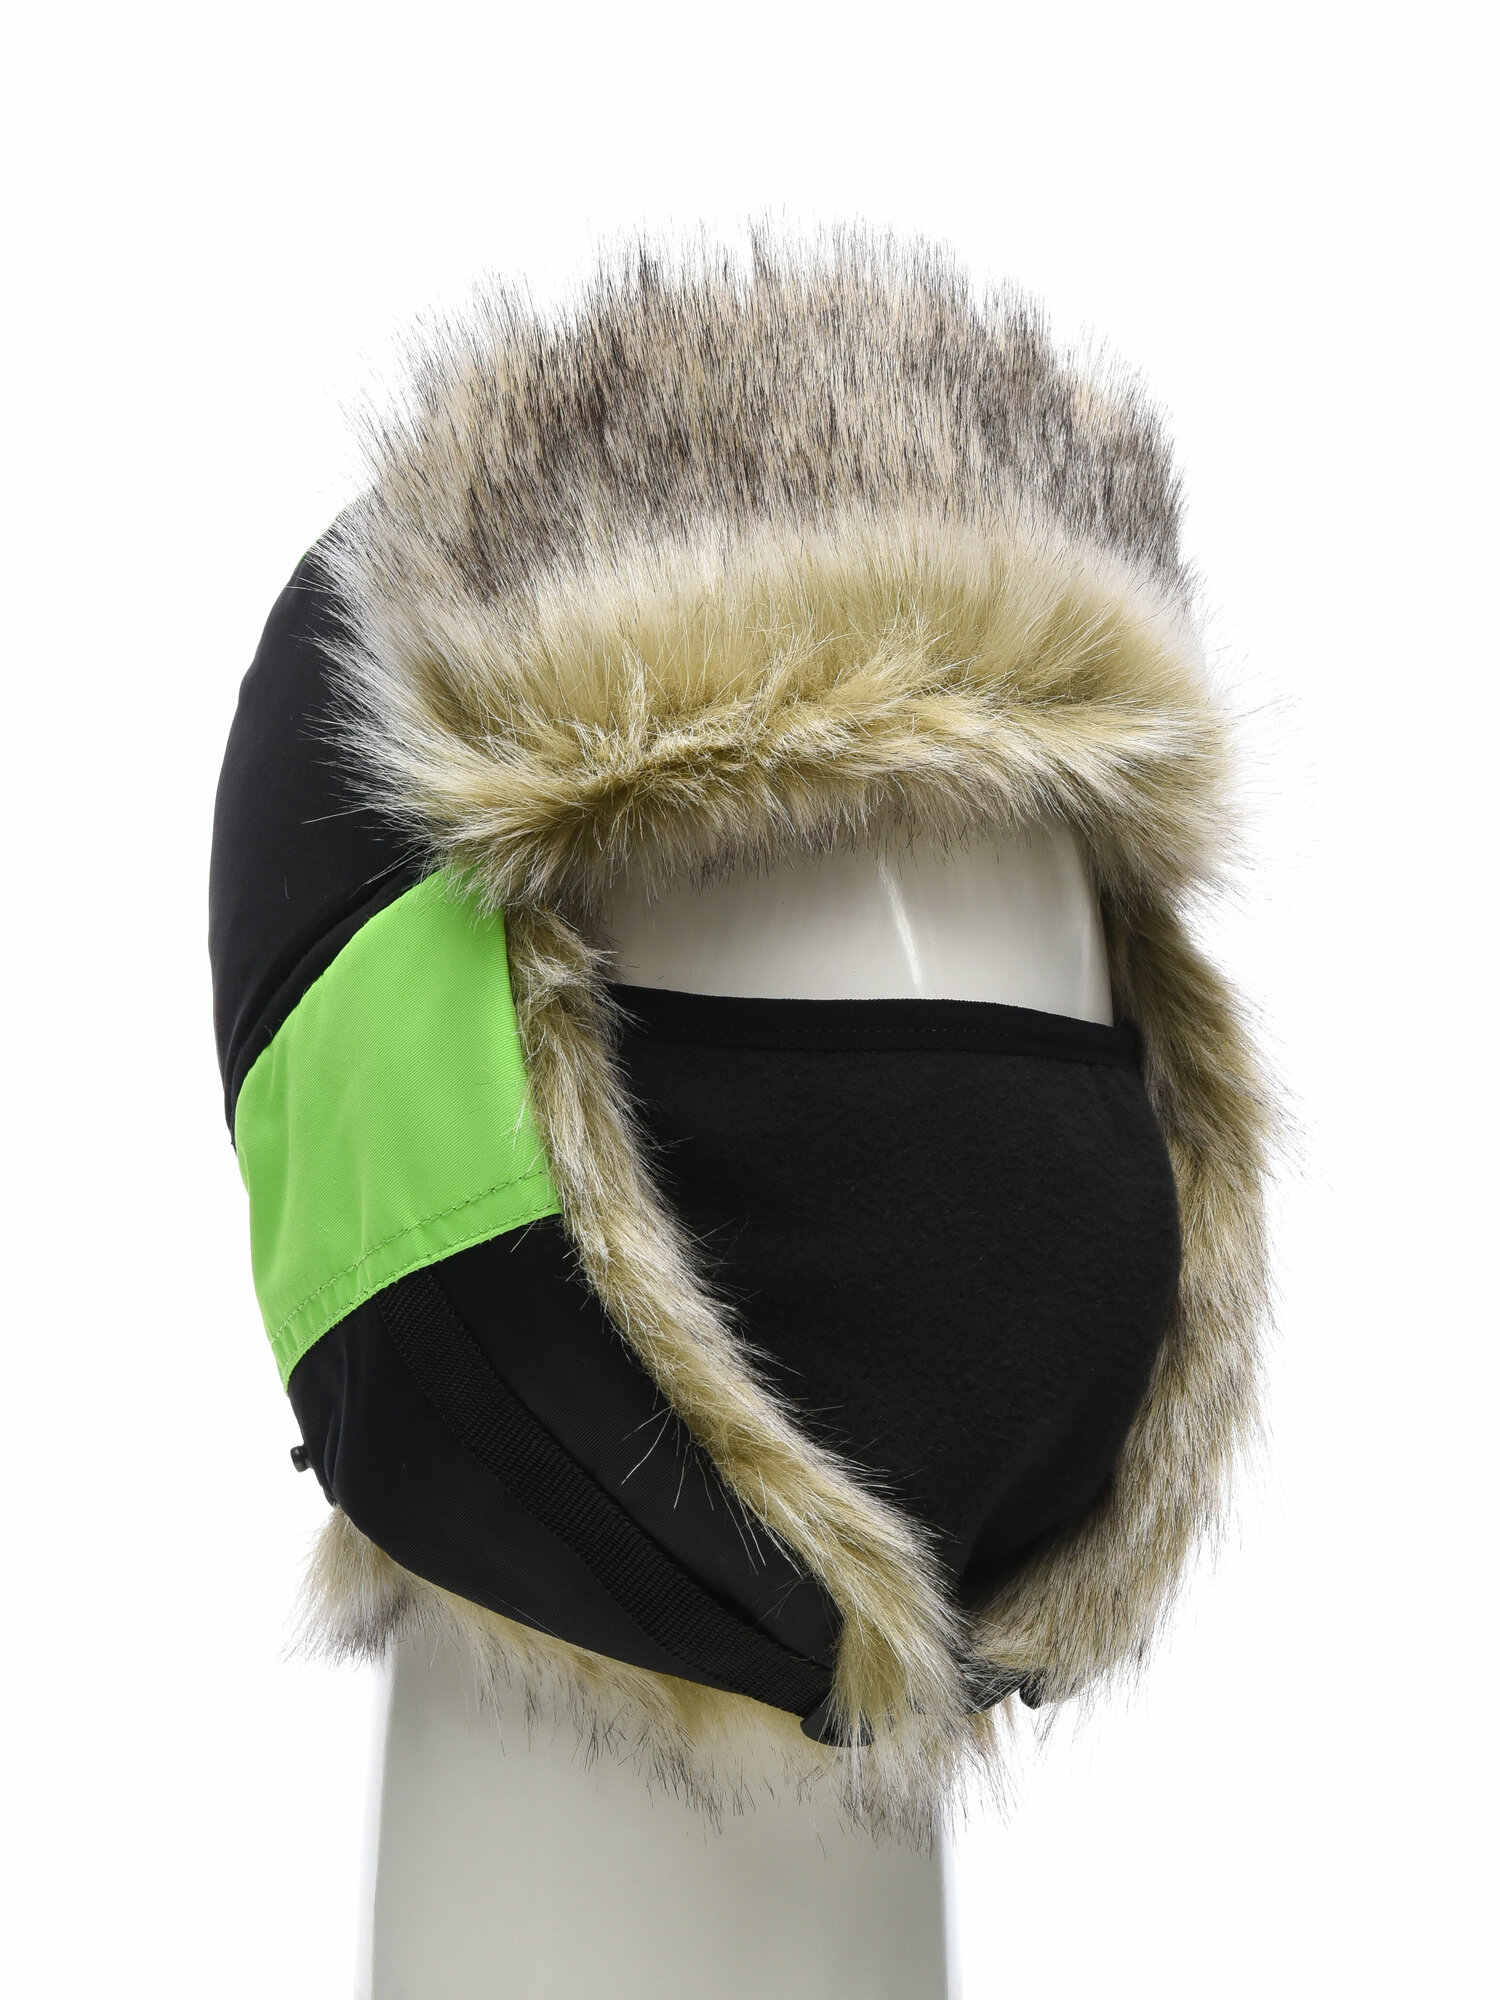 Шапка-ушанка зимняя Huntsman Elbrus а маской, для зимней рыбалки, охоты, повседневной носки, ткань Hit Membrane, с мехом, цвет черный (р.56-58)